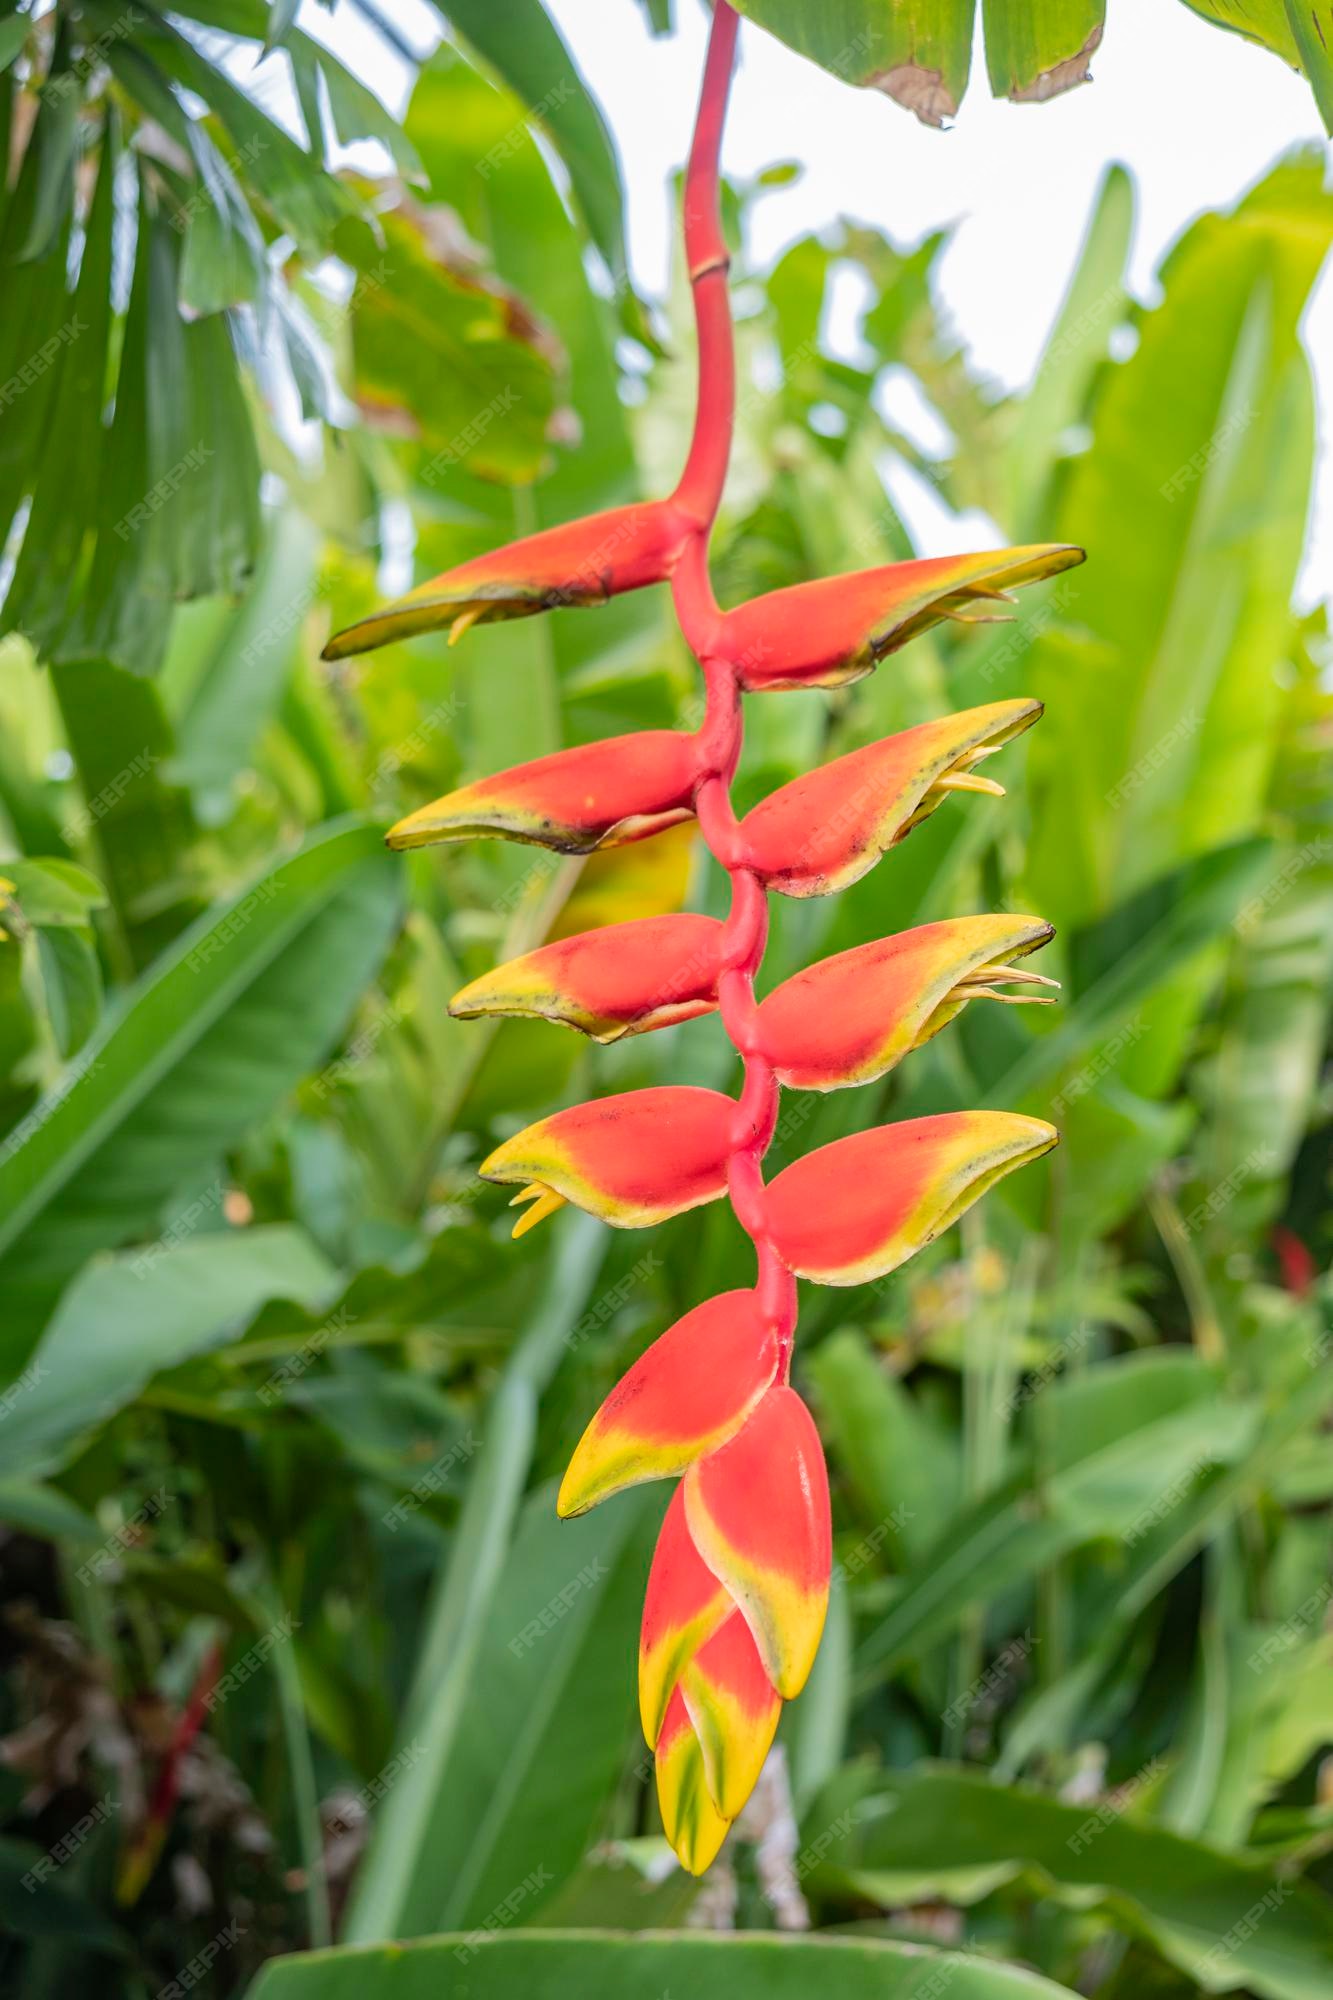 Flor de palma roja y amarilla. | Foto Premium